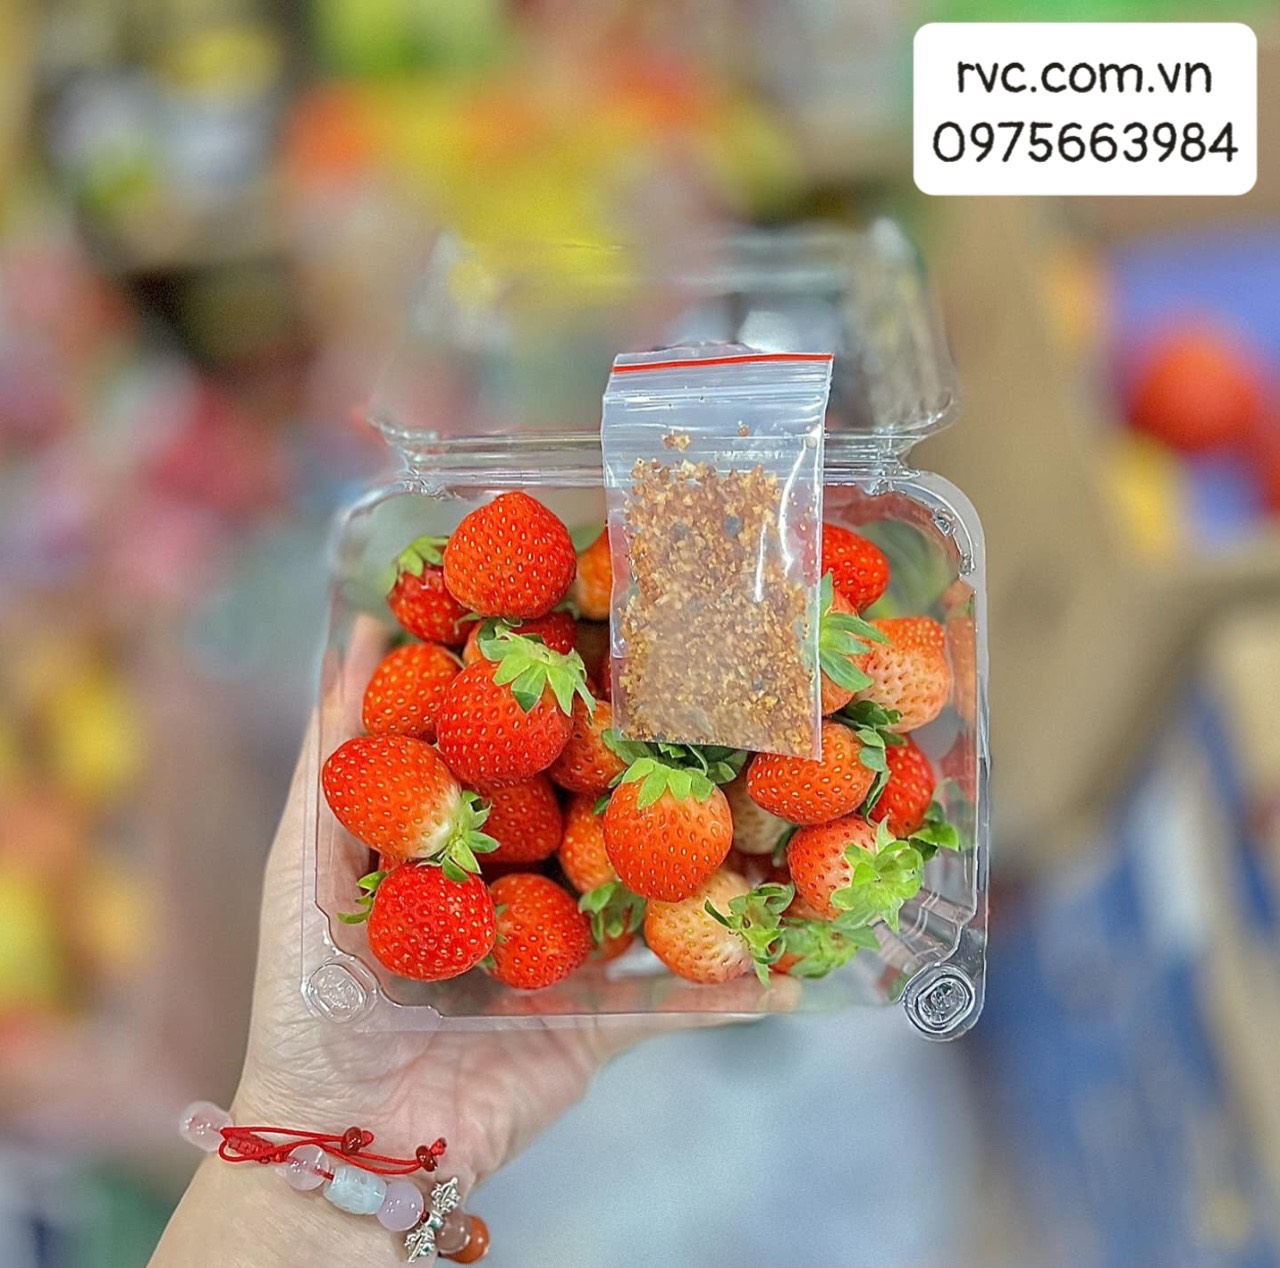 Mua hộp nhựa trái cây 500g chất lượng, giá sỉ ở đâu? Hop_nhua_dung_dau_15-jpg